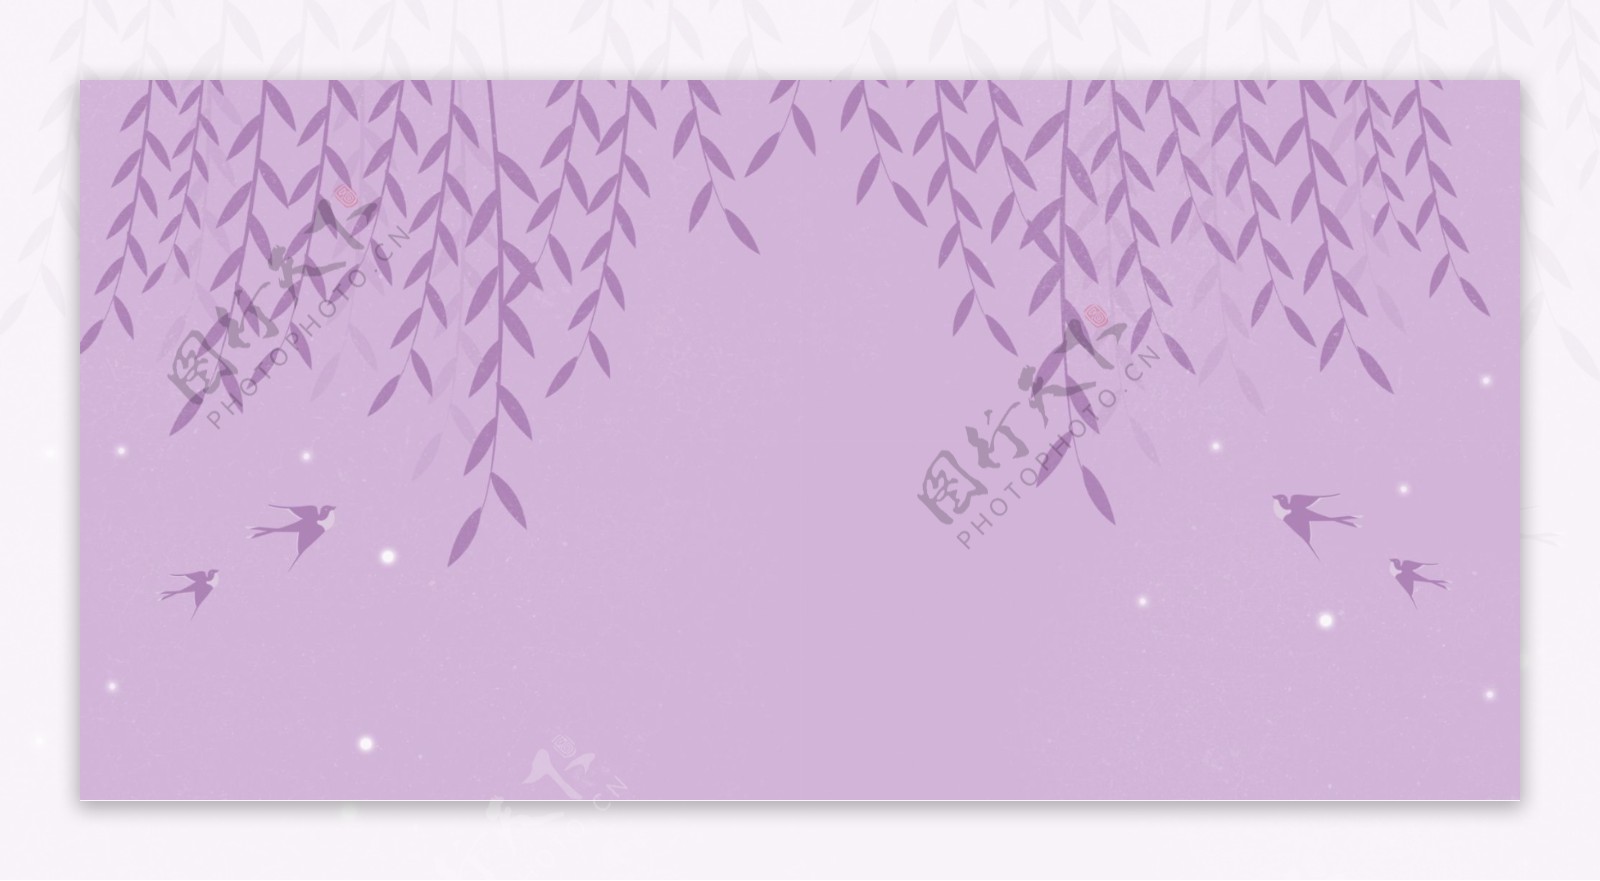 柳枝飞燕紫色卡通背景